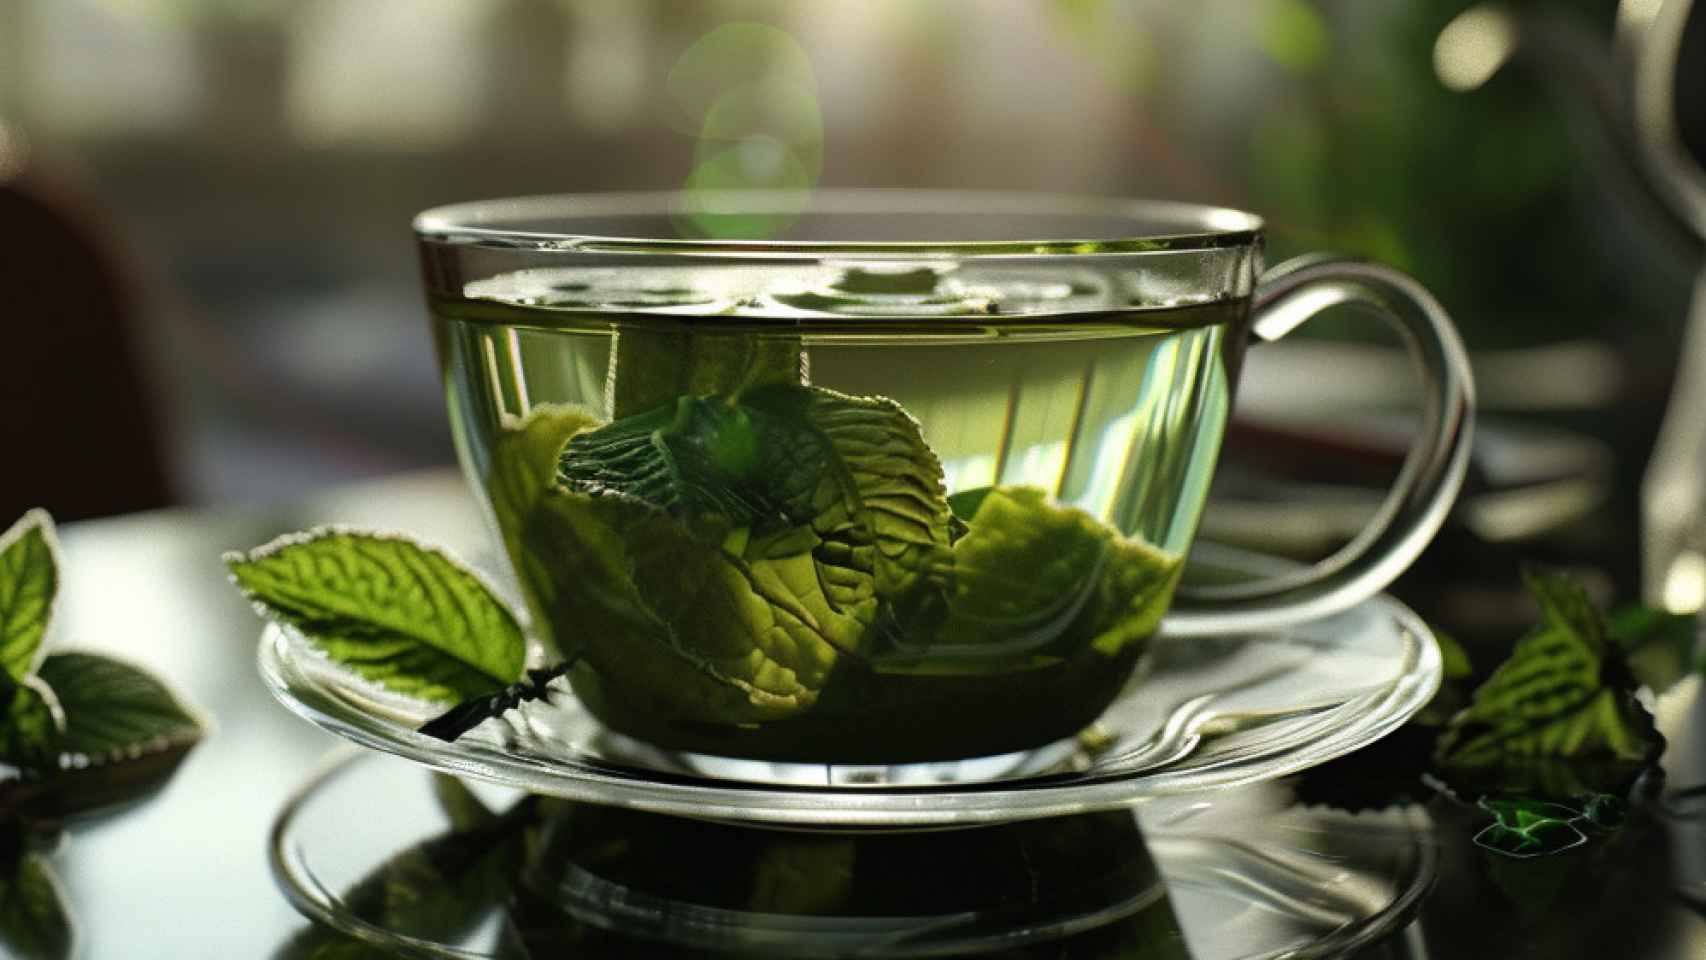 Cómo preparar la taza de té perfecta, según los expertos